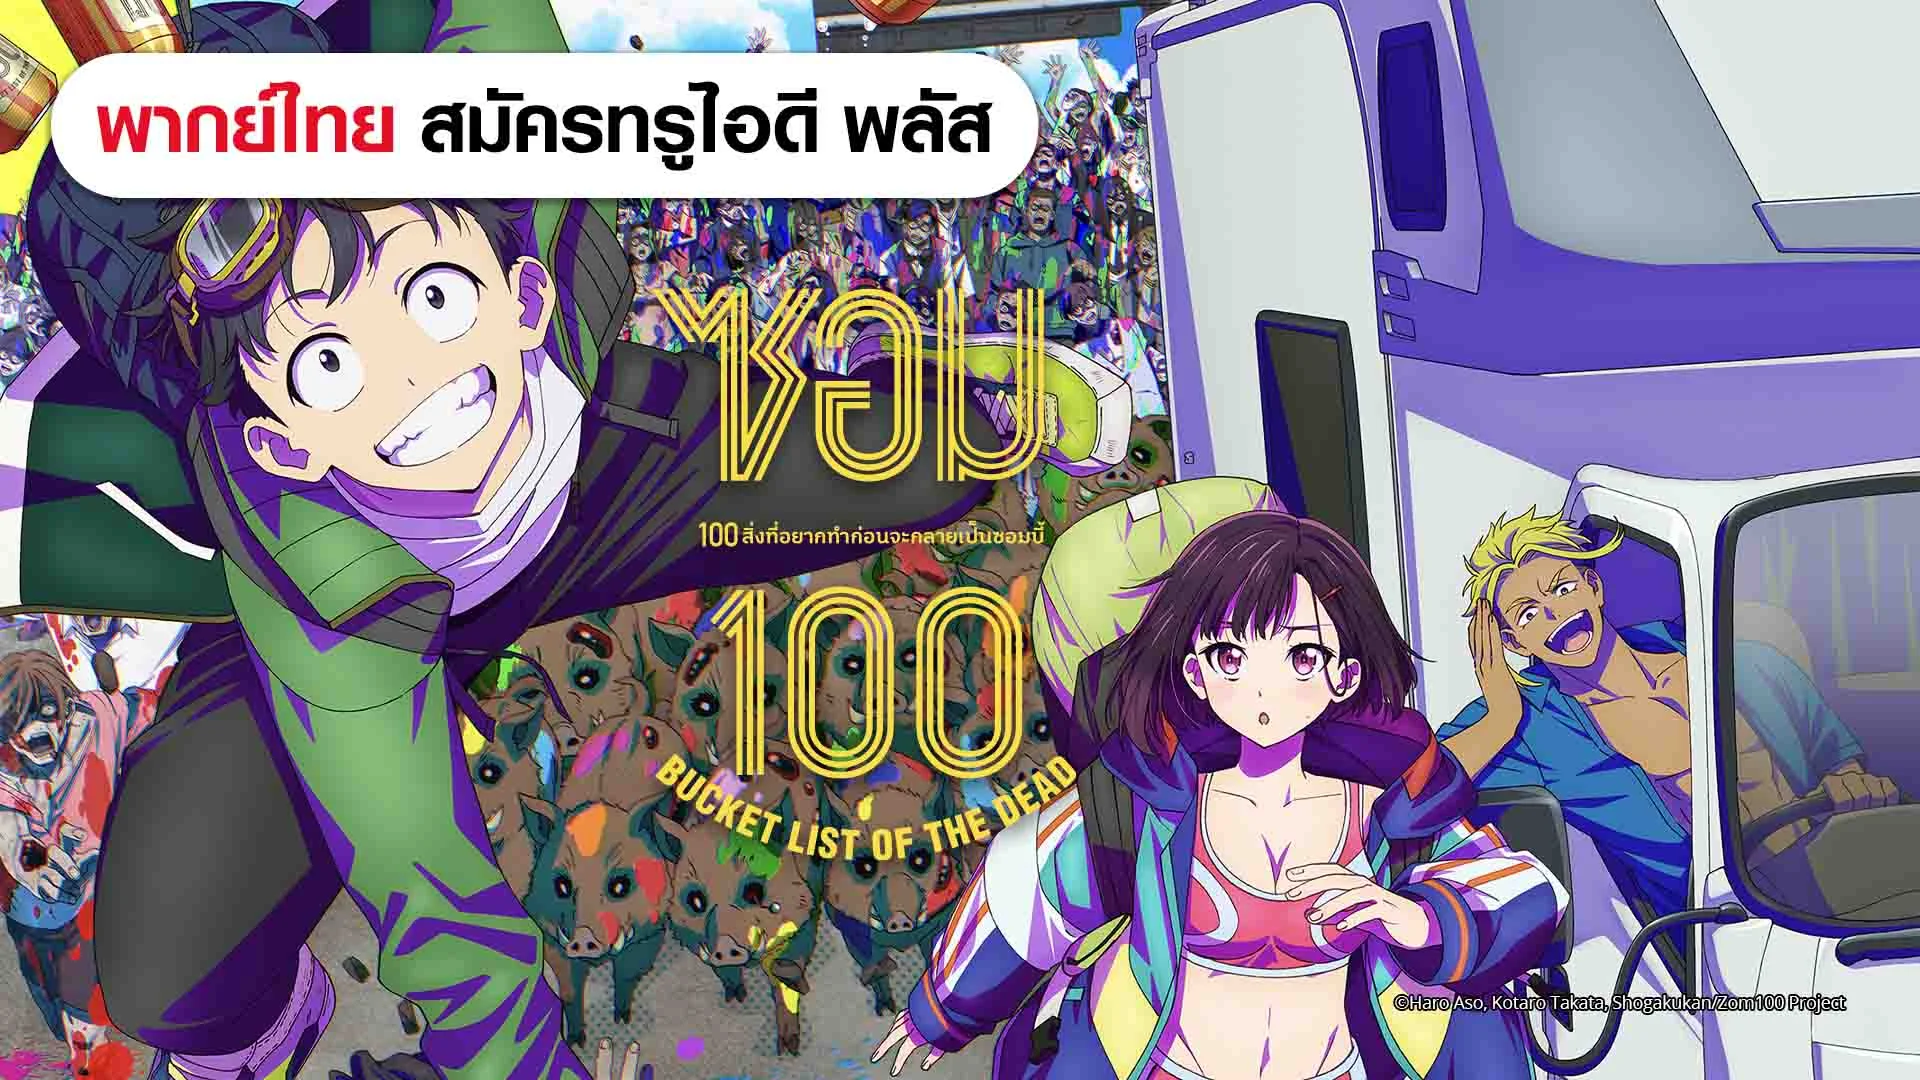 ซอม 100: 100 สิ่งที่อยากทำก่อนจะกลายเป็นซอมบี้ (ดูพากย์ไทยไม่มีโฆษณา)